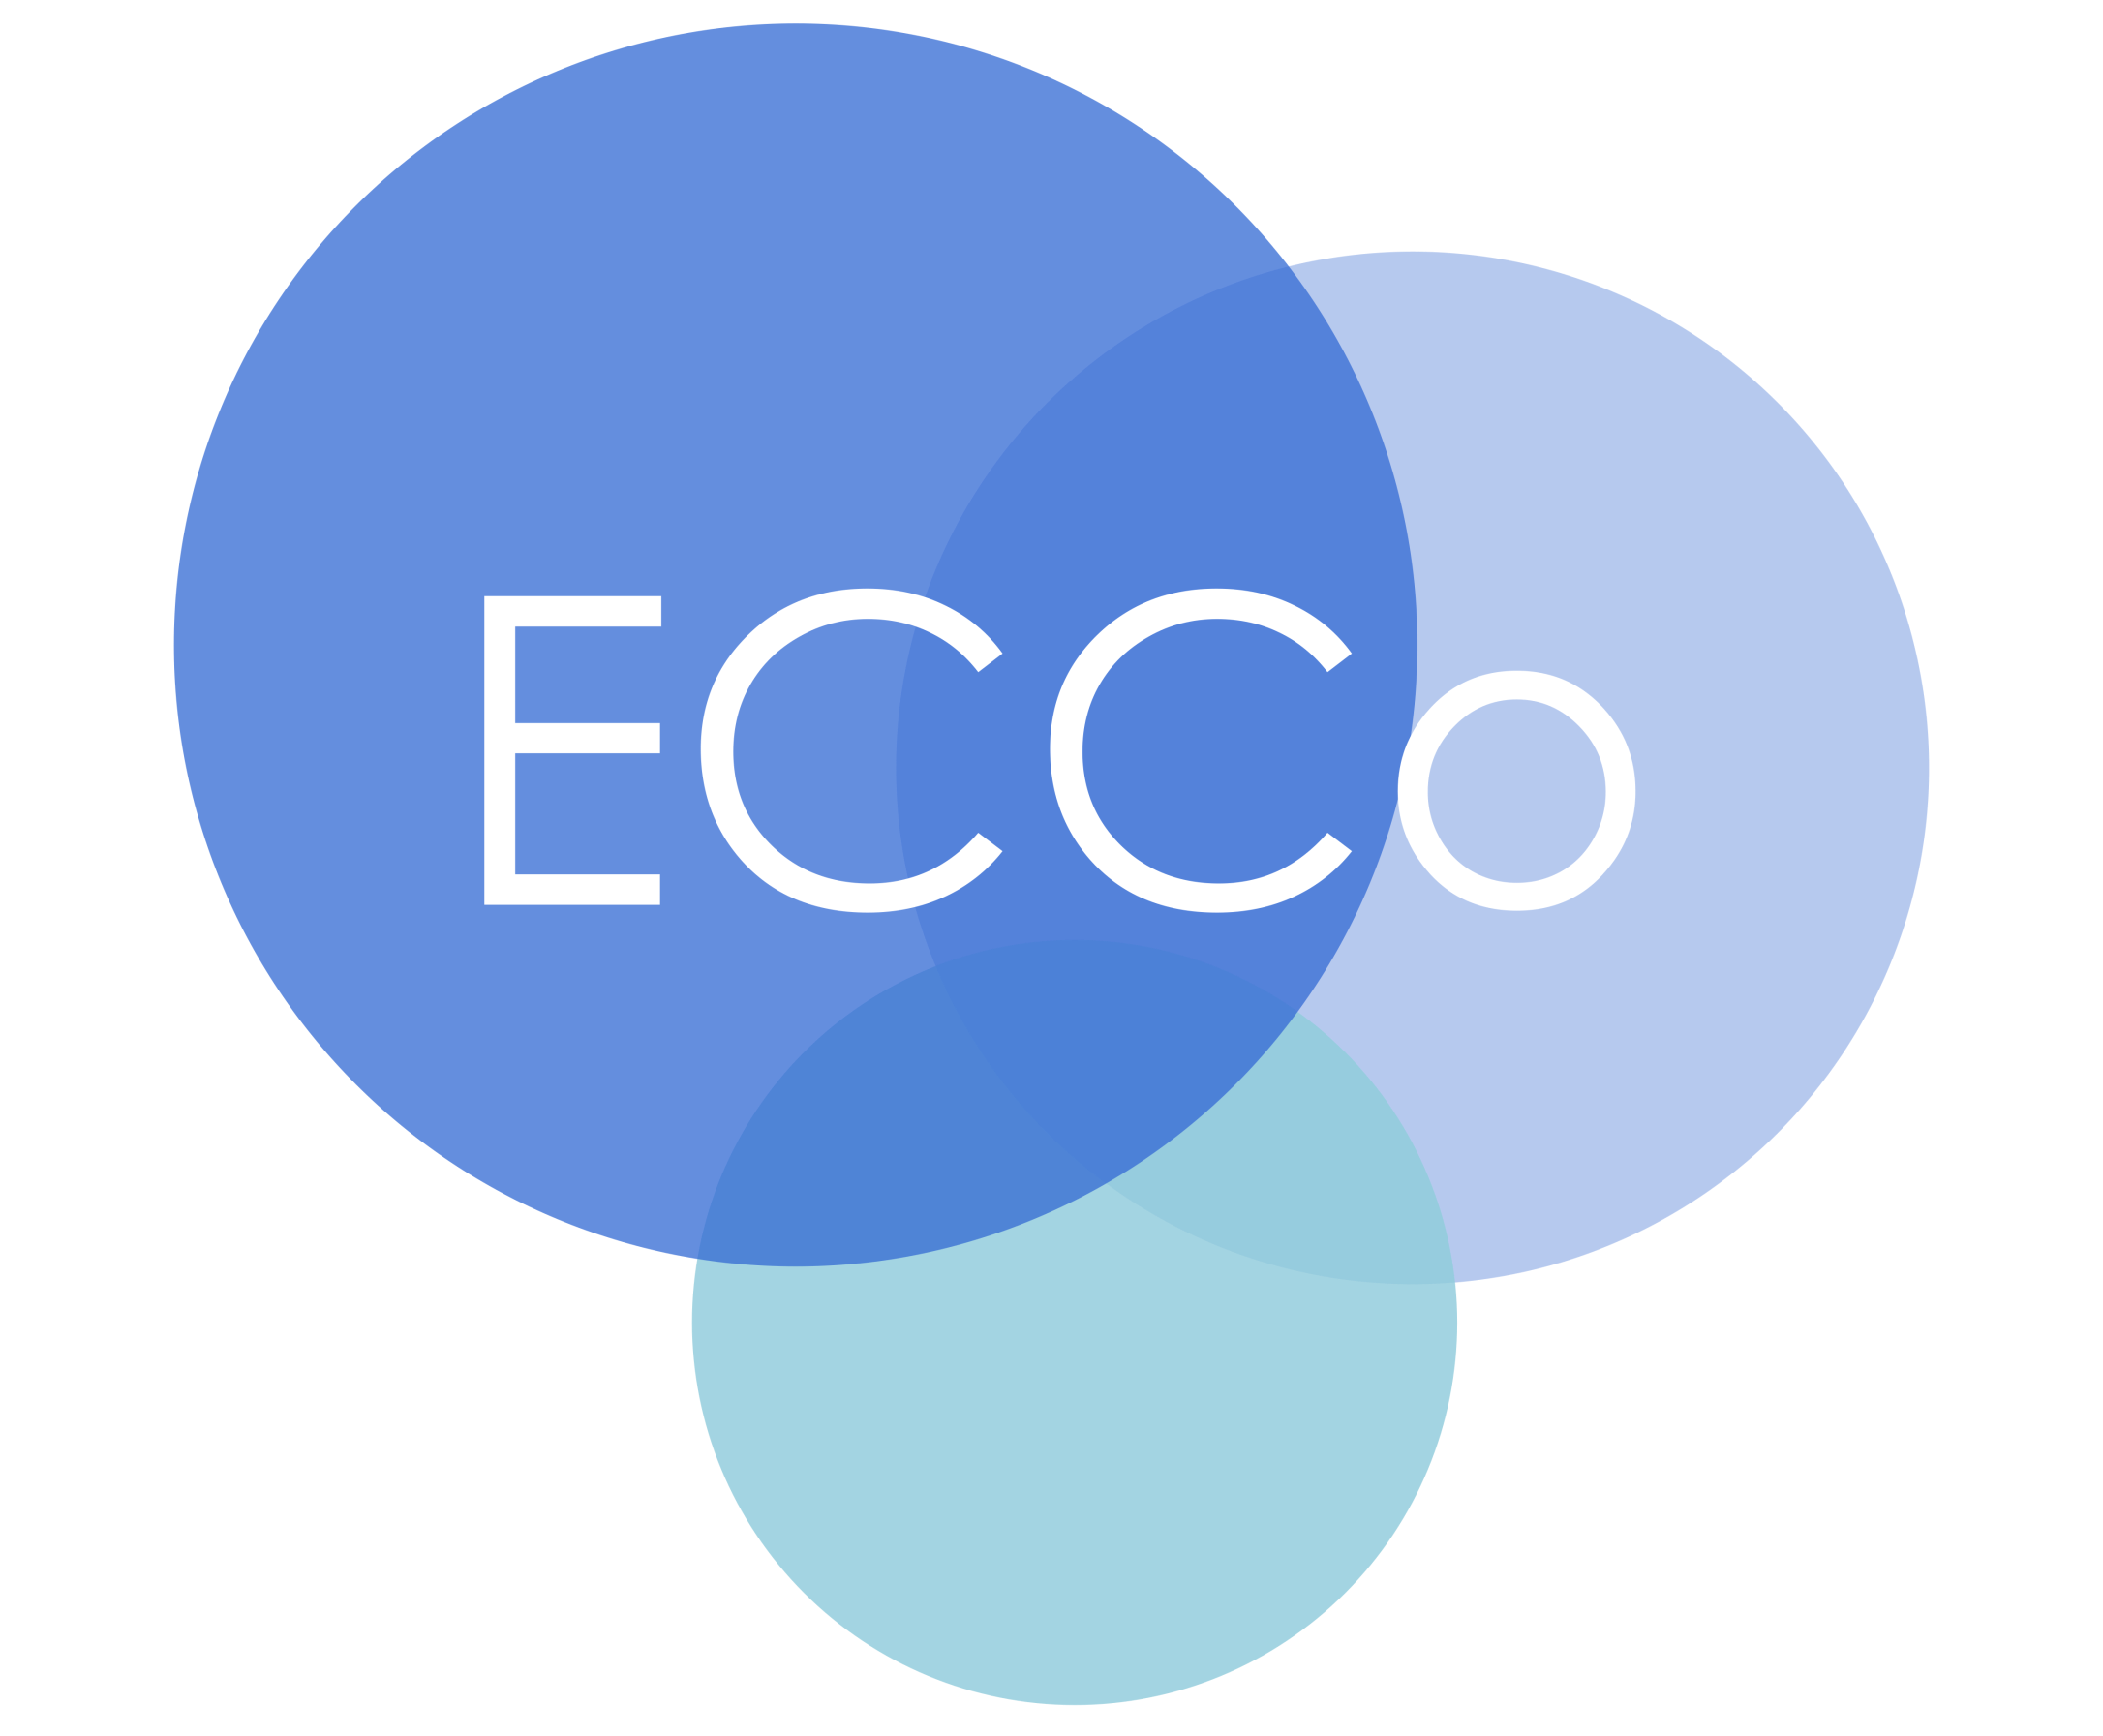 ECCo (Early Career Colloids) 2023